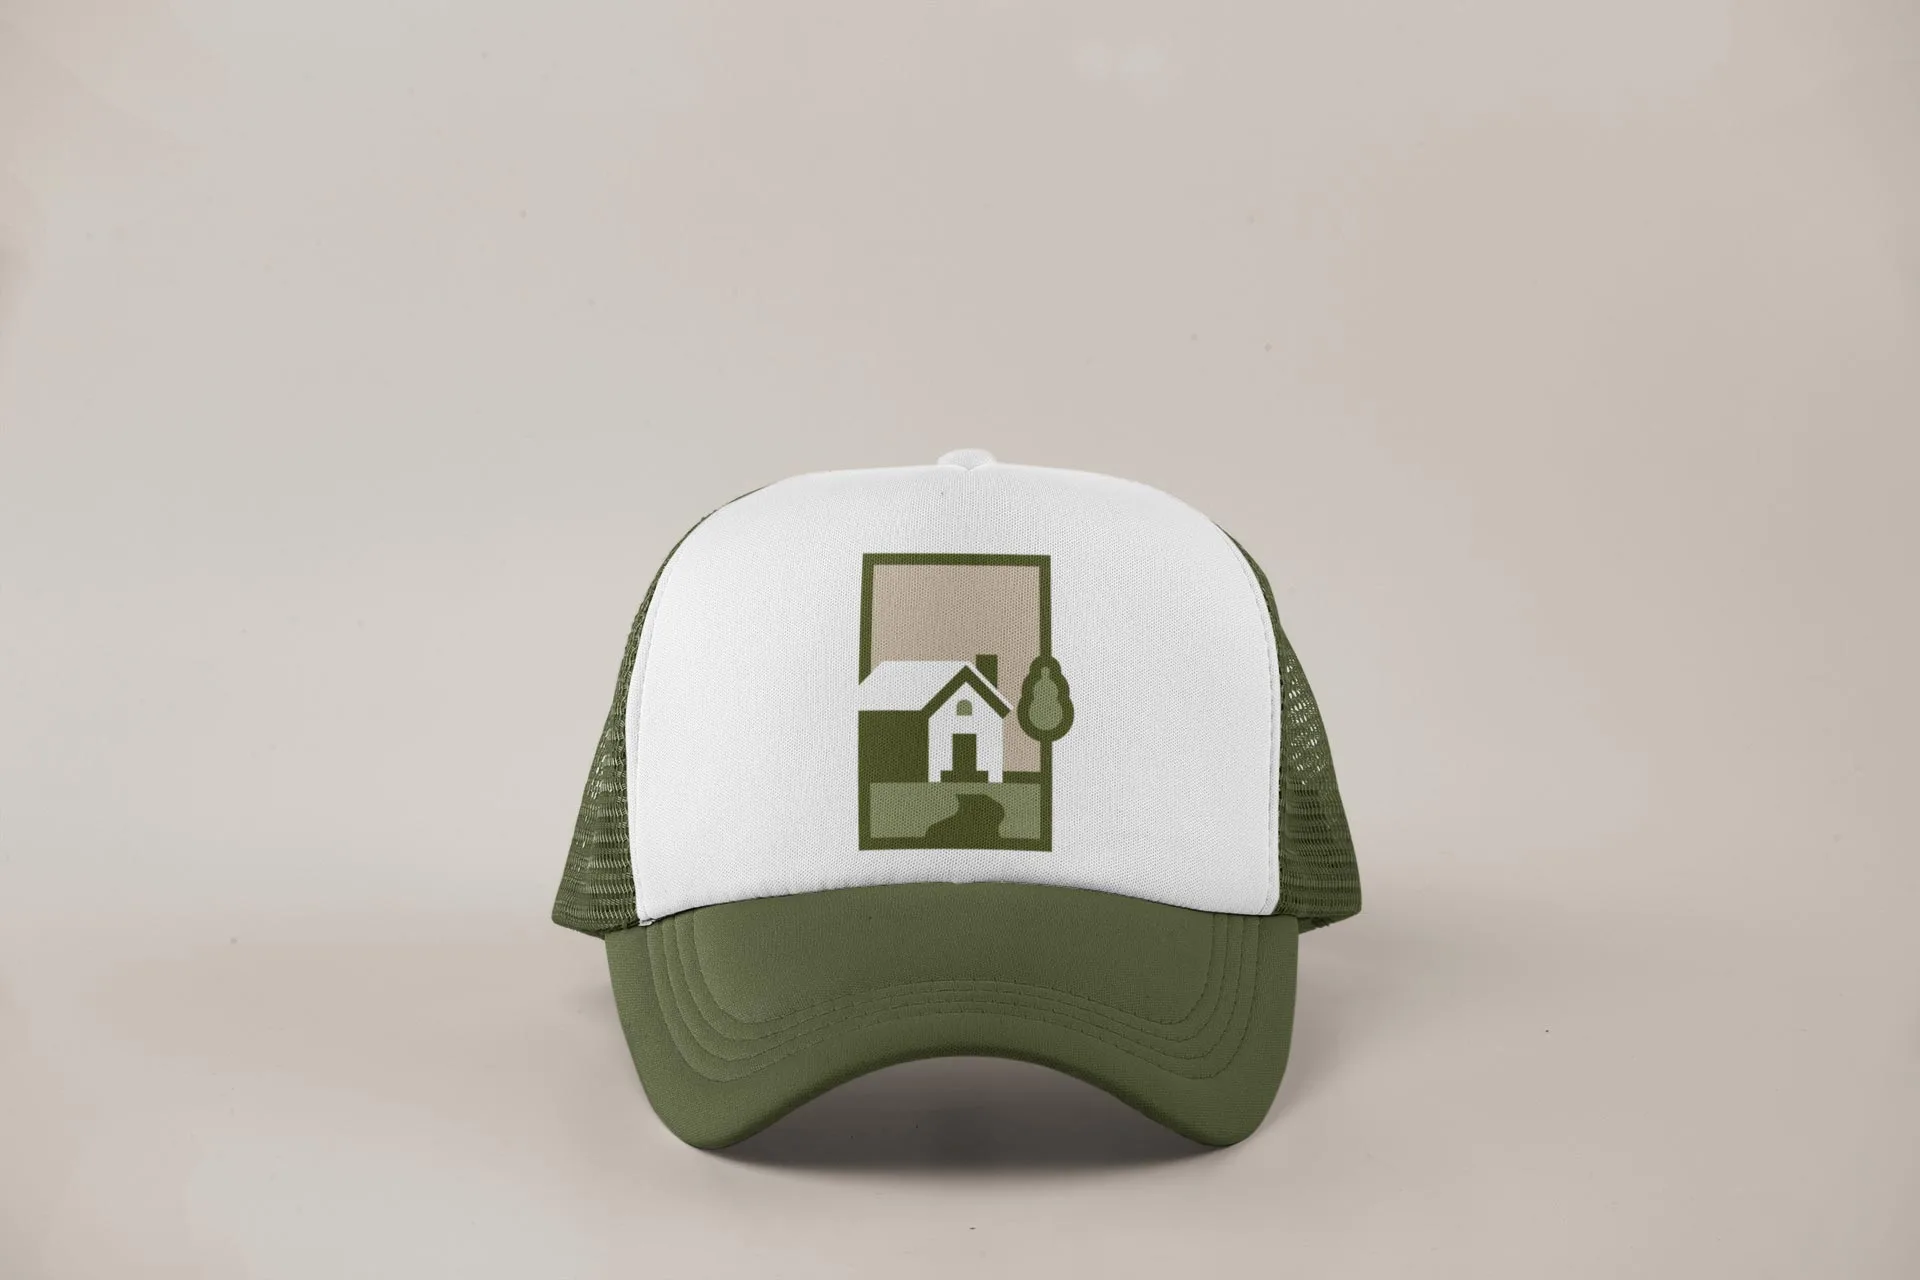 KS Logo design on trucker hat